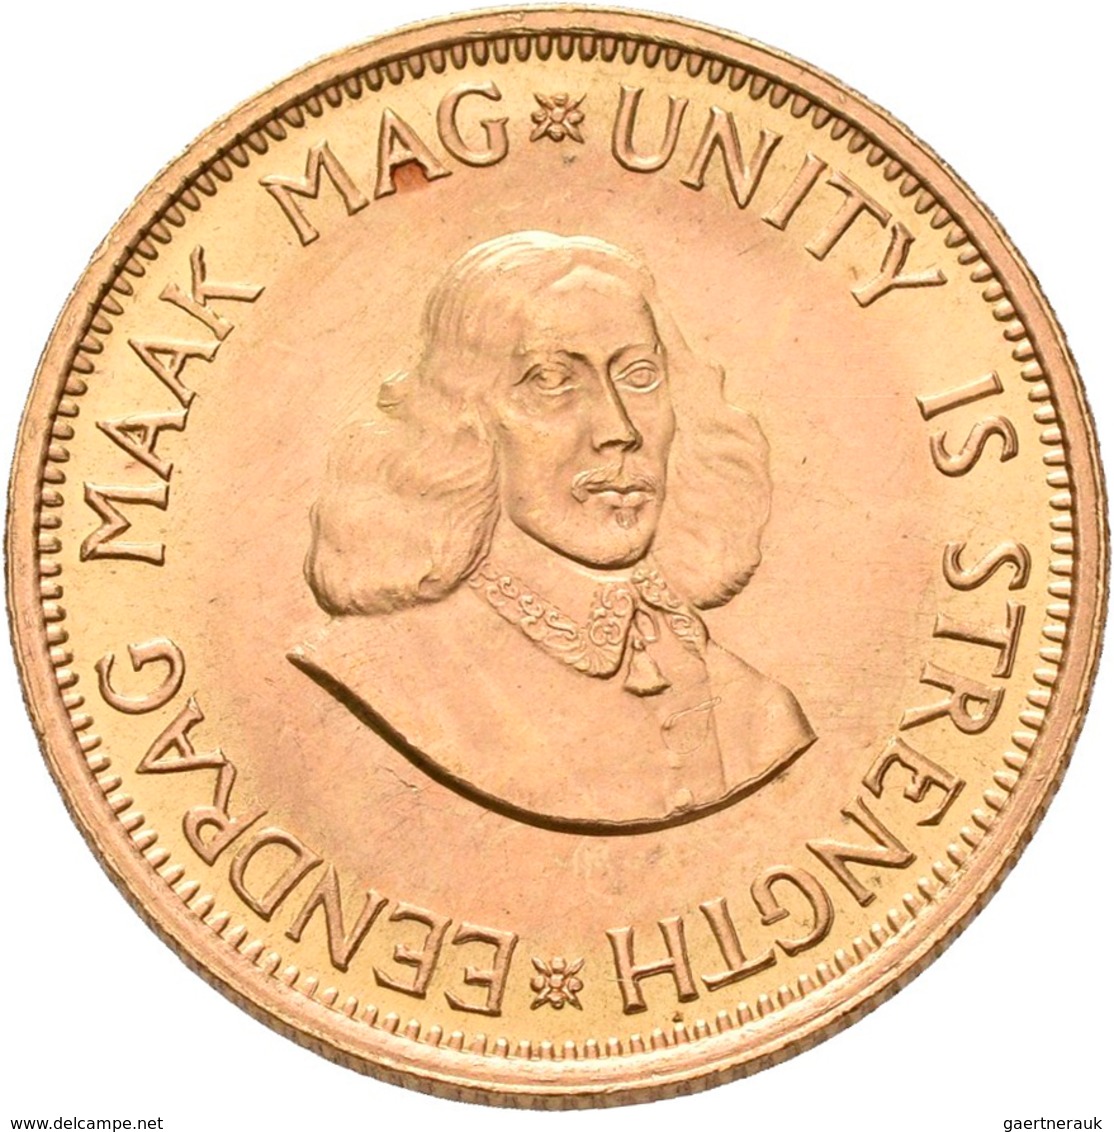 Südafrika - Anlagegold: 2 Rand 1965, KM# 64, Friedberg 11. 7,99 G, 917/1000 Gold, Vorzüglich. - South Africa